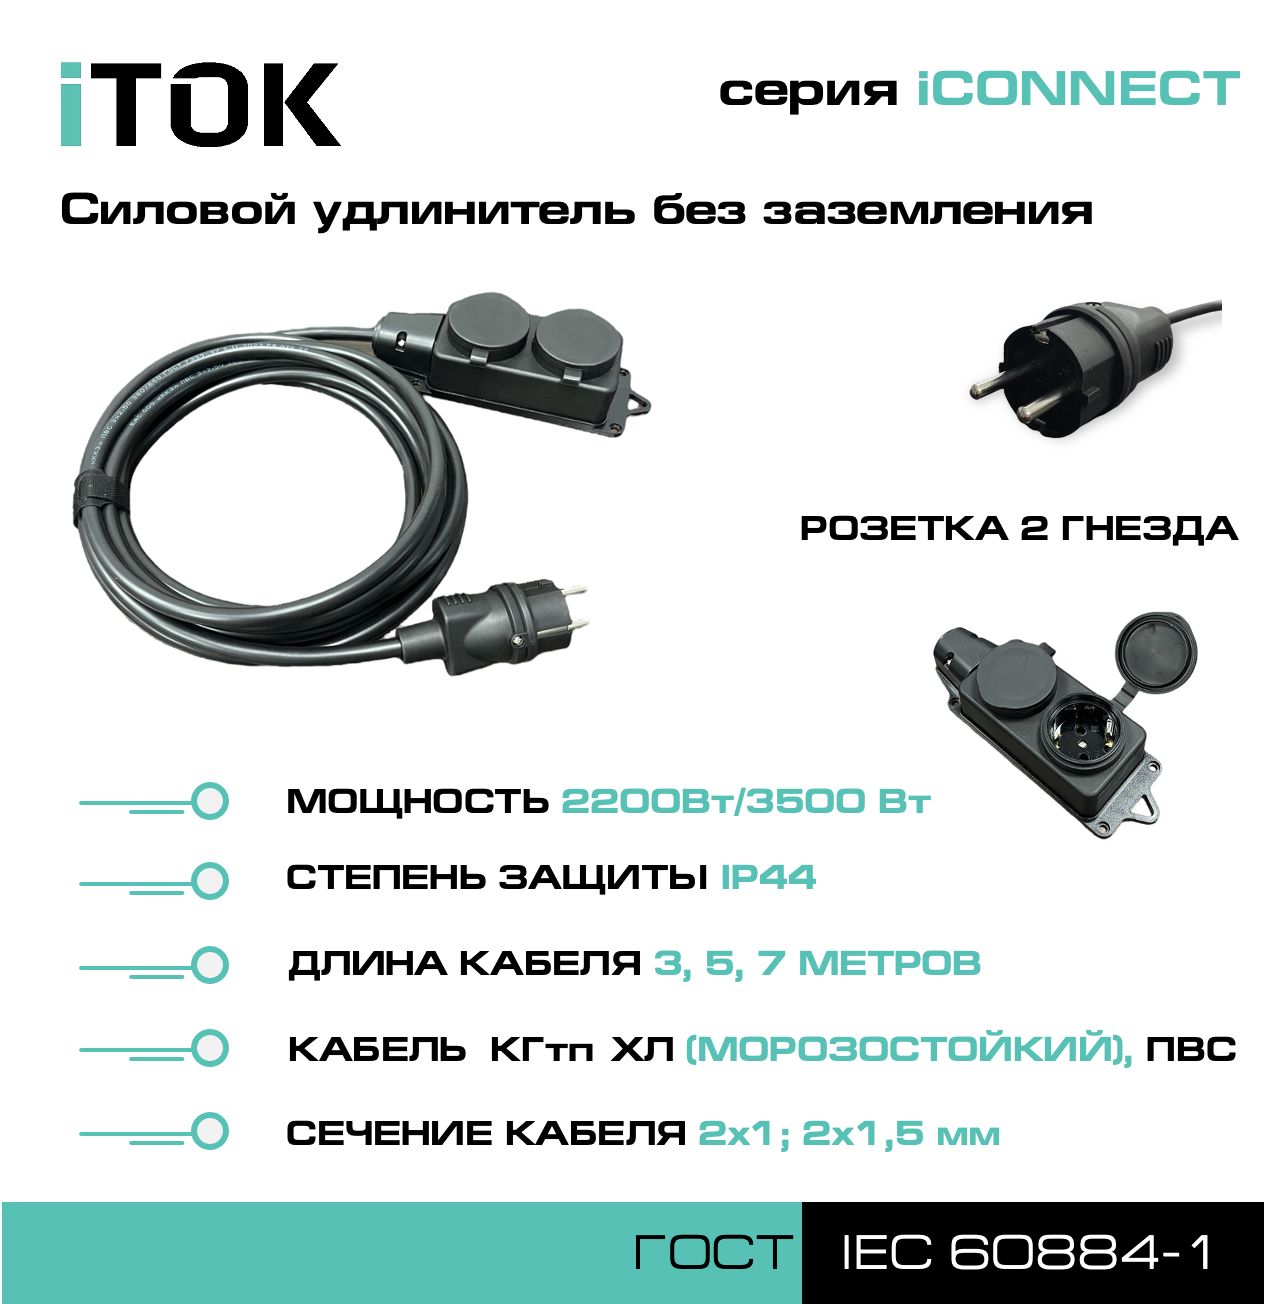 Удлинитель без земли серии iTOK iCONNECT ПВС 2х1,5 мм 2 гнезда IP44 5 м насадка шнек для земли калибр